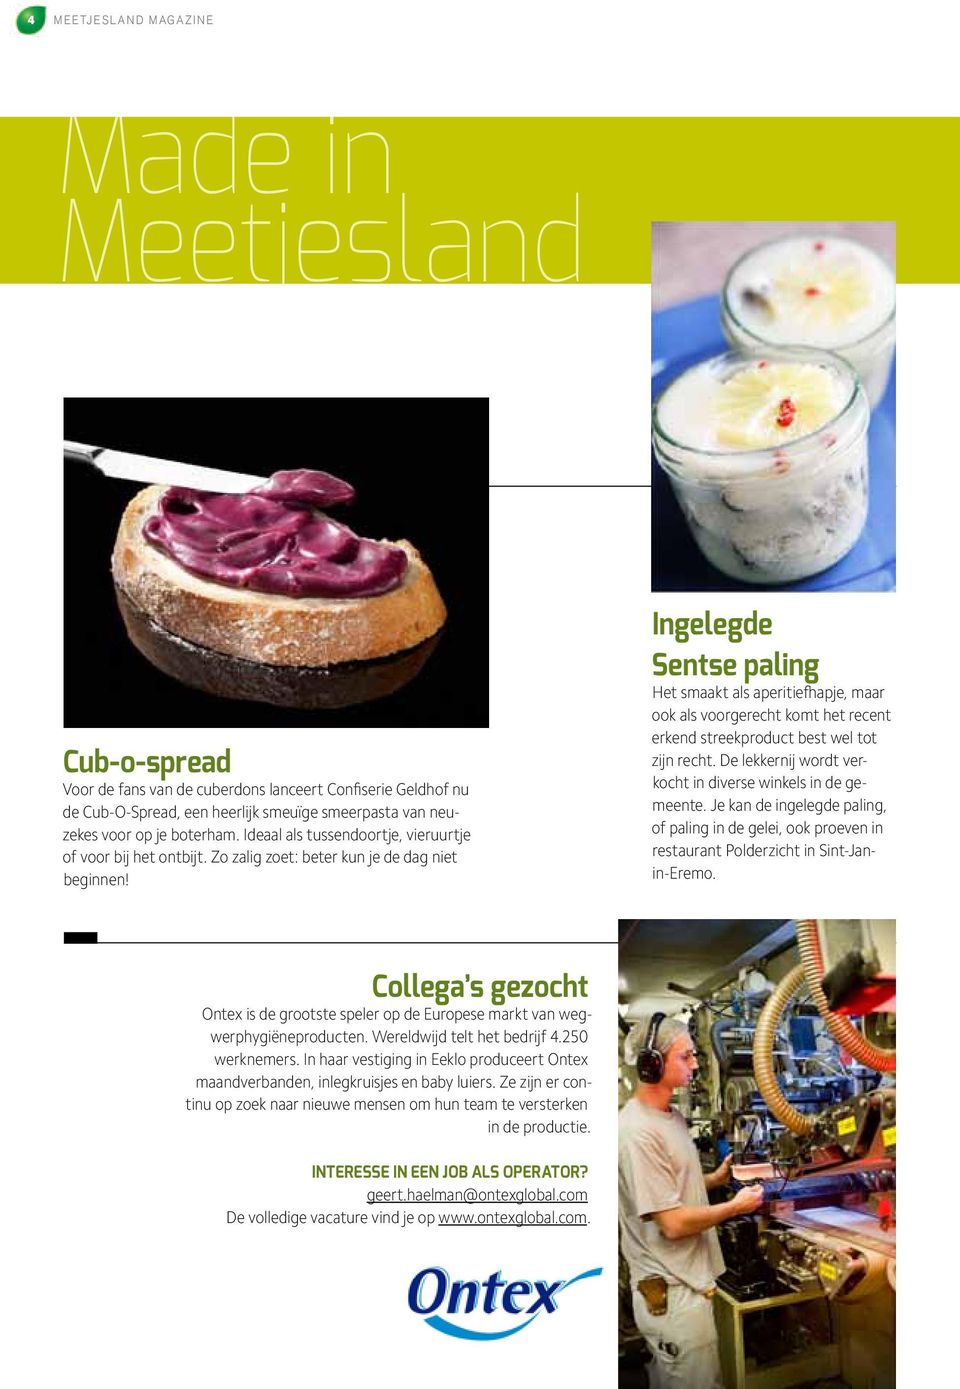 Ingelegde Sentse paling Het smaakt als aperitiefhapje, maar ook als voorgerecht komt het recent erkend streekproduct best wel tot zijn recht.